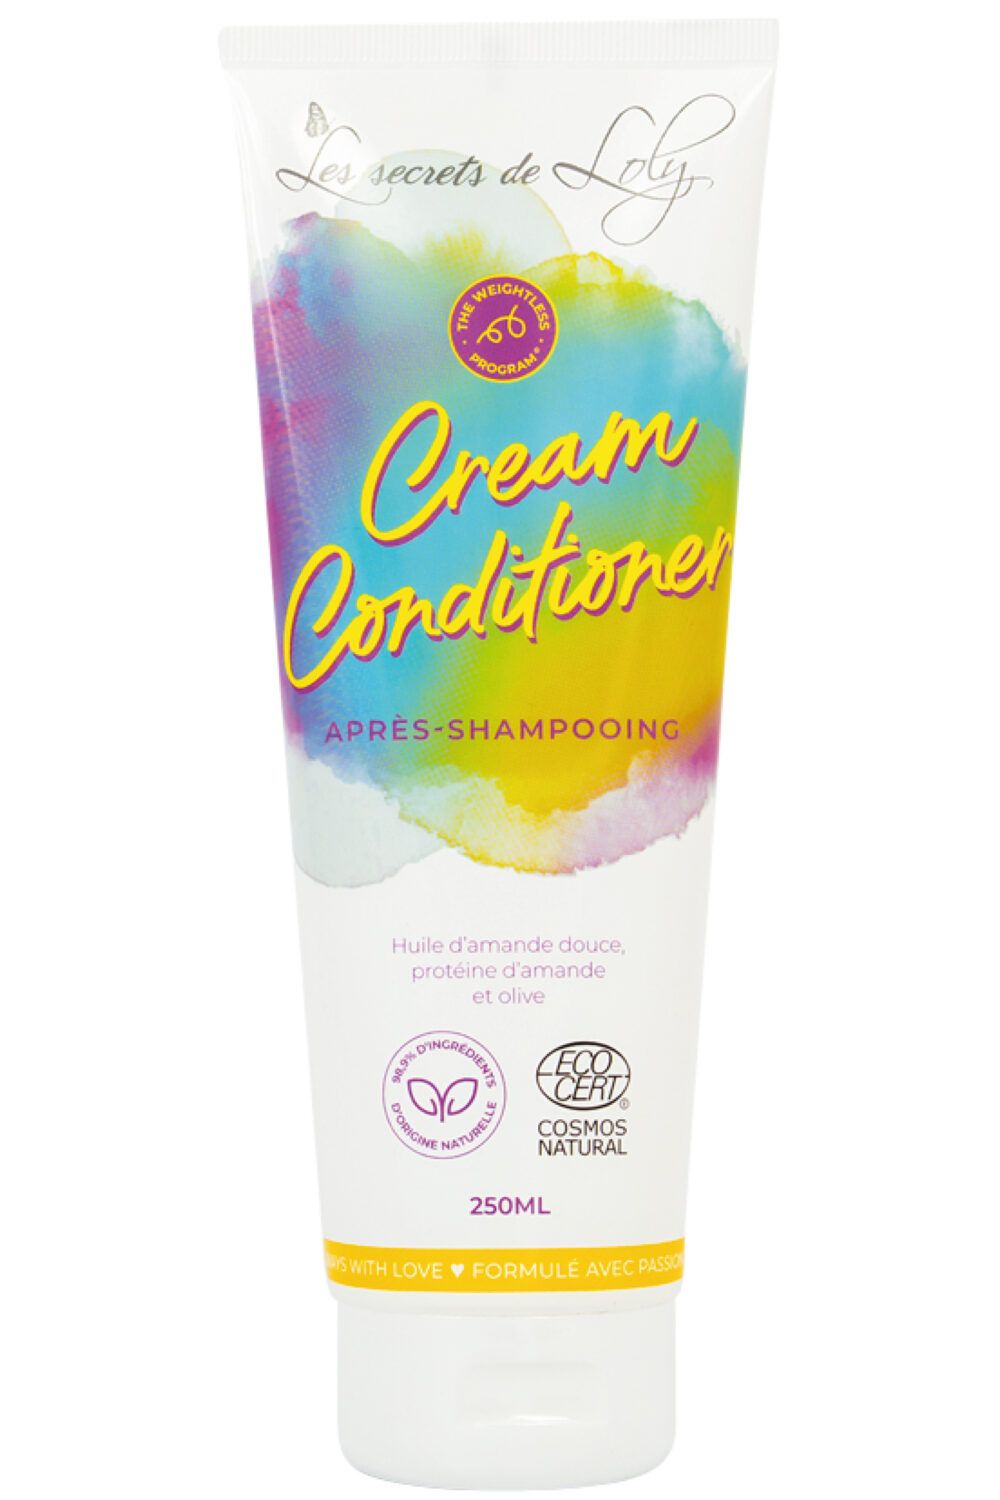 Les Secrets de Loly - Après-shampoing pour cheveux bouclés CC Cream